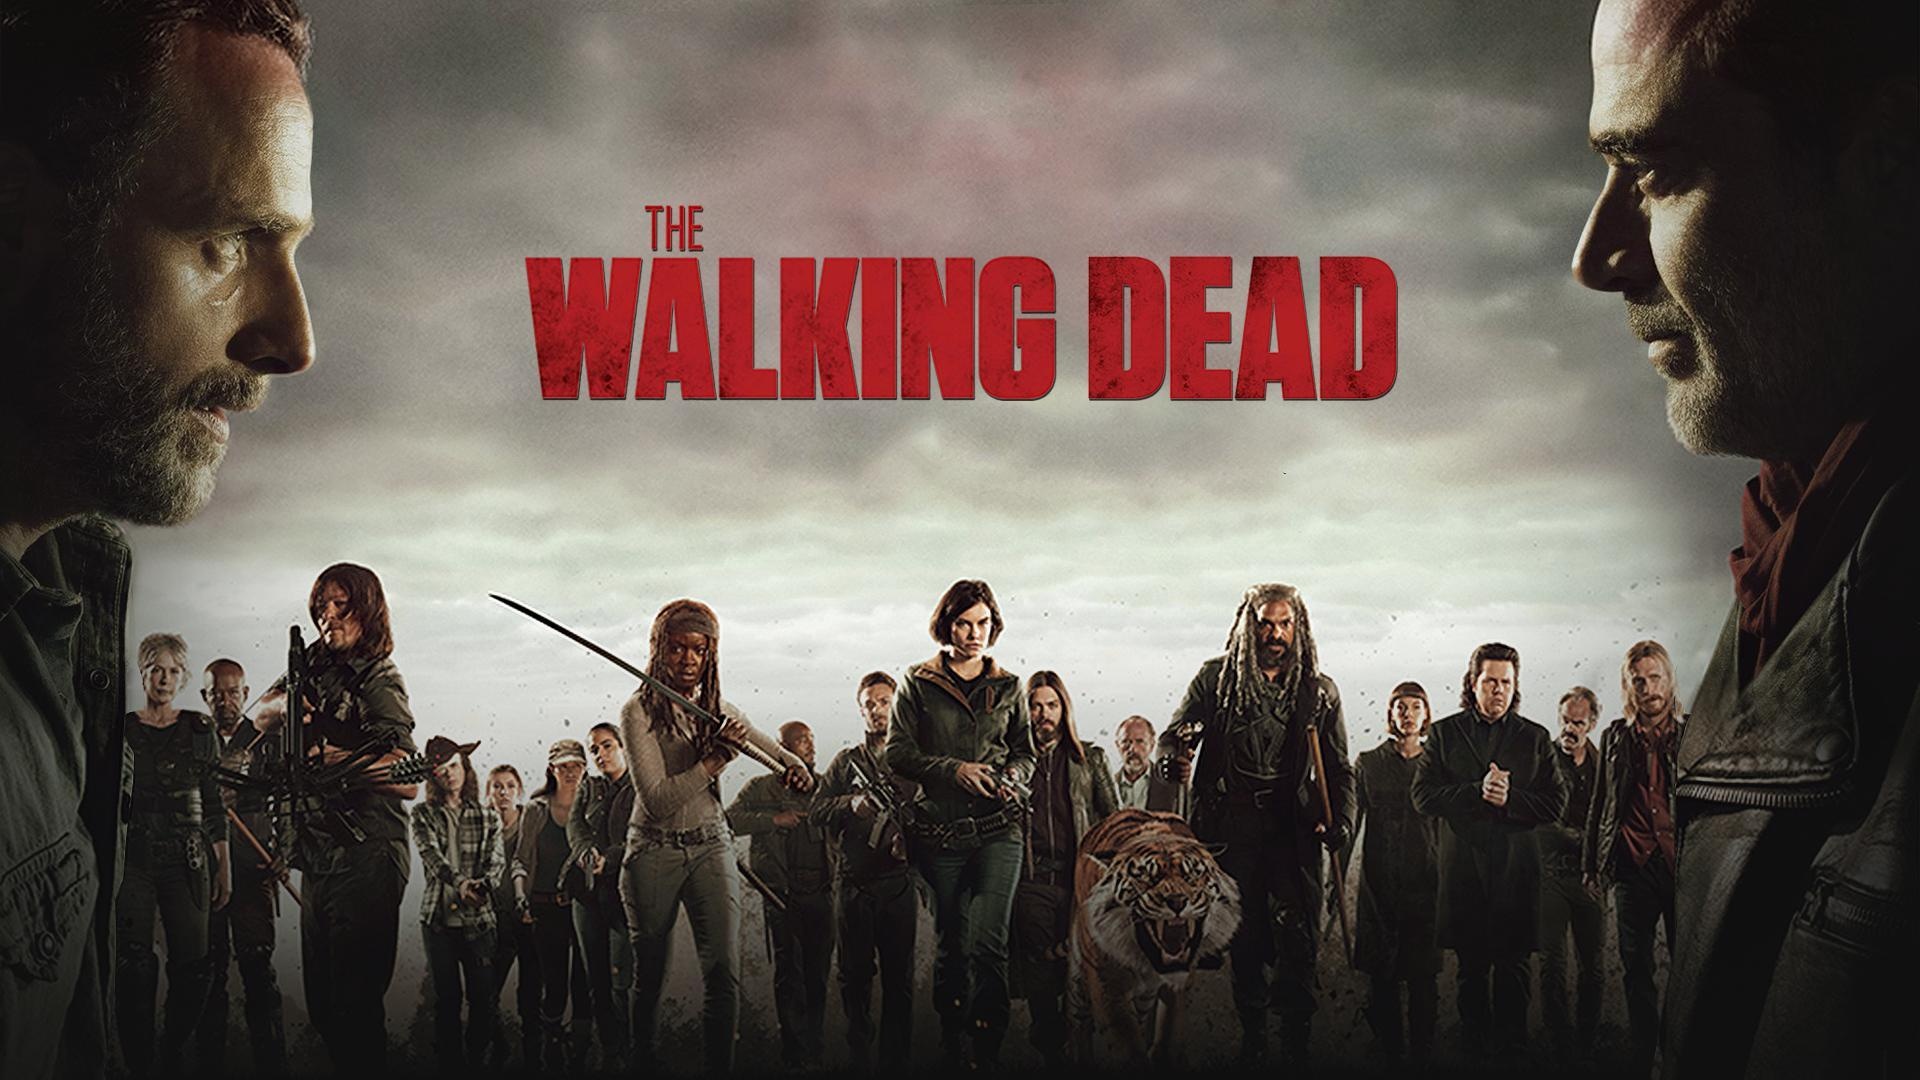 Frank Darabont, Walking Dead season, Release date, Latest updates, 1920x1080 Full HD Desktop